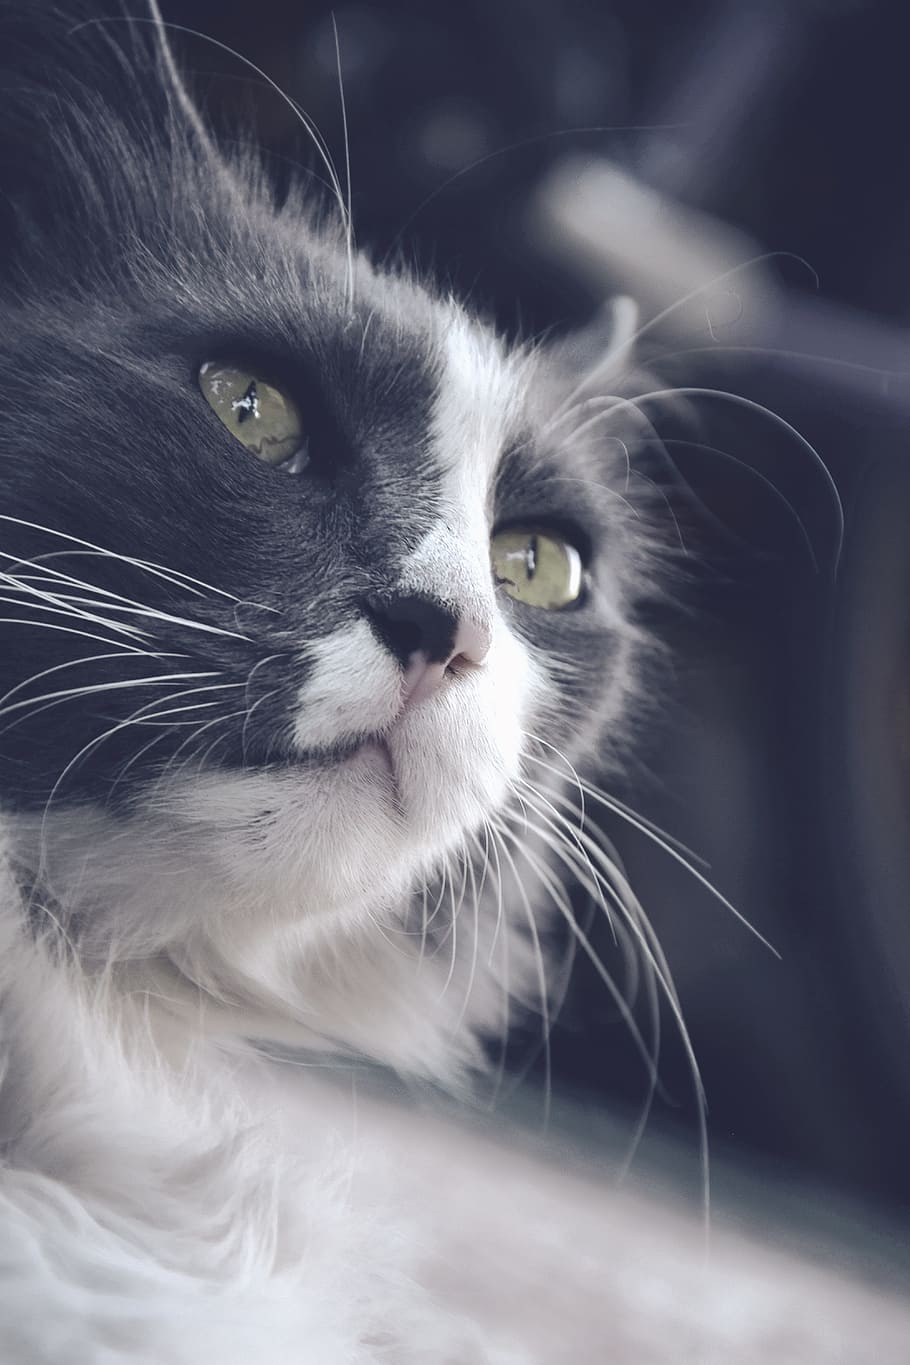 고양이, 반점, 녹색 눈, 콧수염, 상아탑에 틀어 박힌 고양이, 고양이 흰색 회색, 길 잃은 고양이, miao, 국내 고양이, 국내